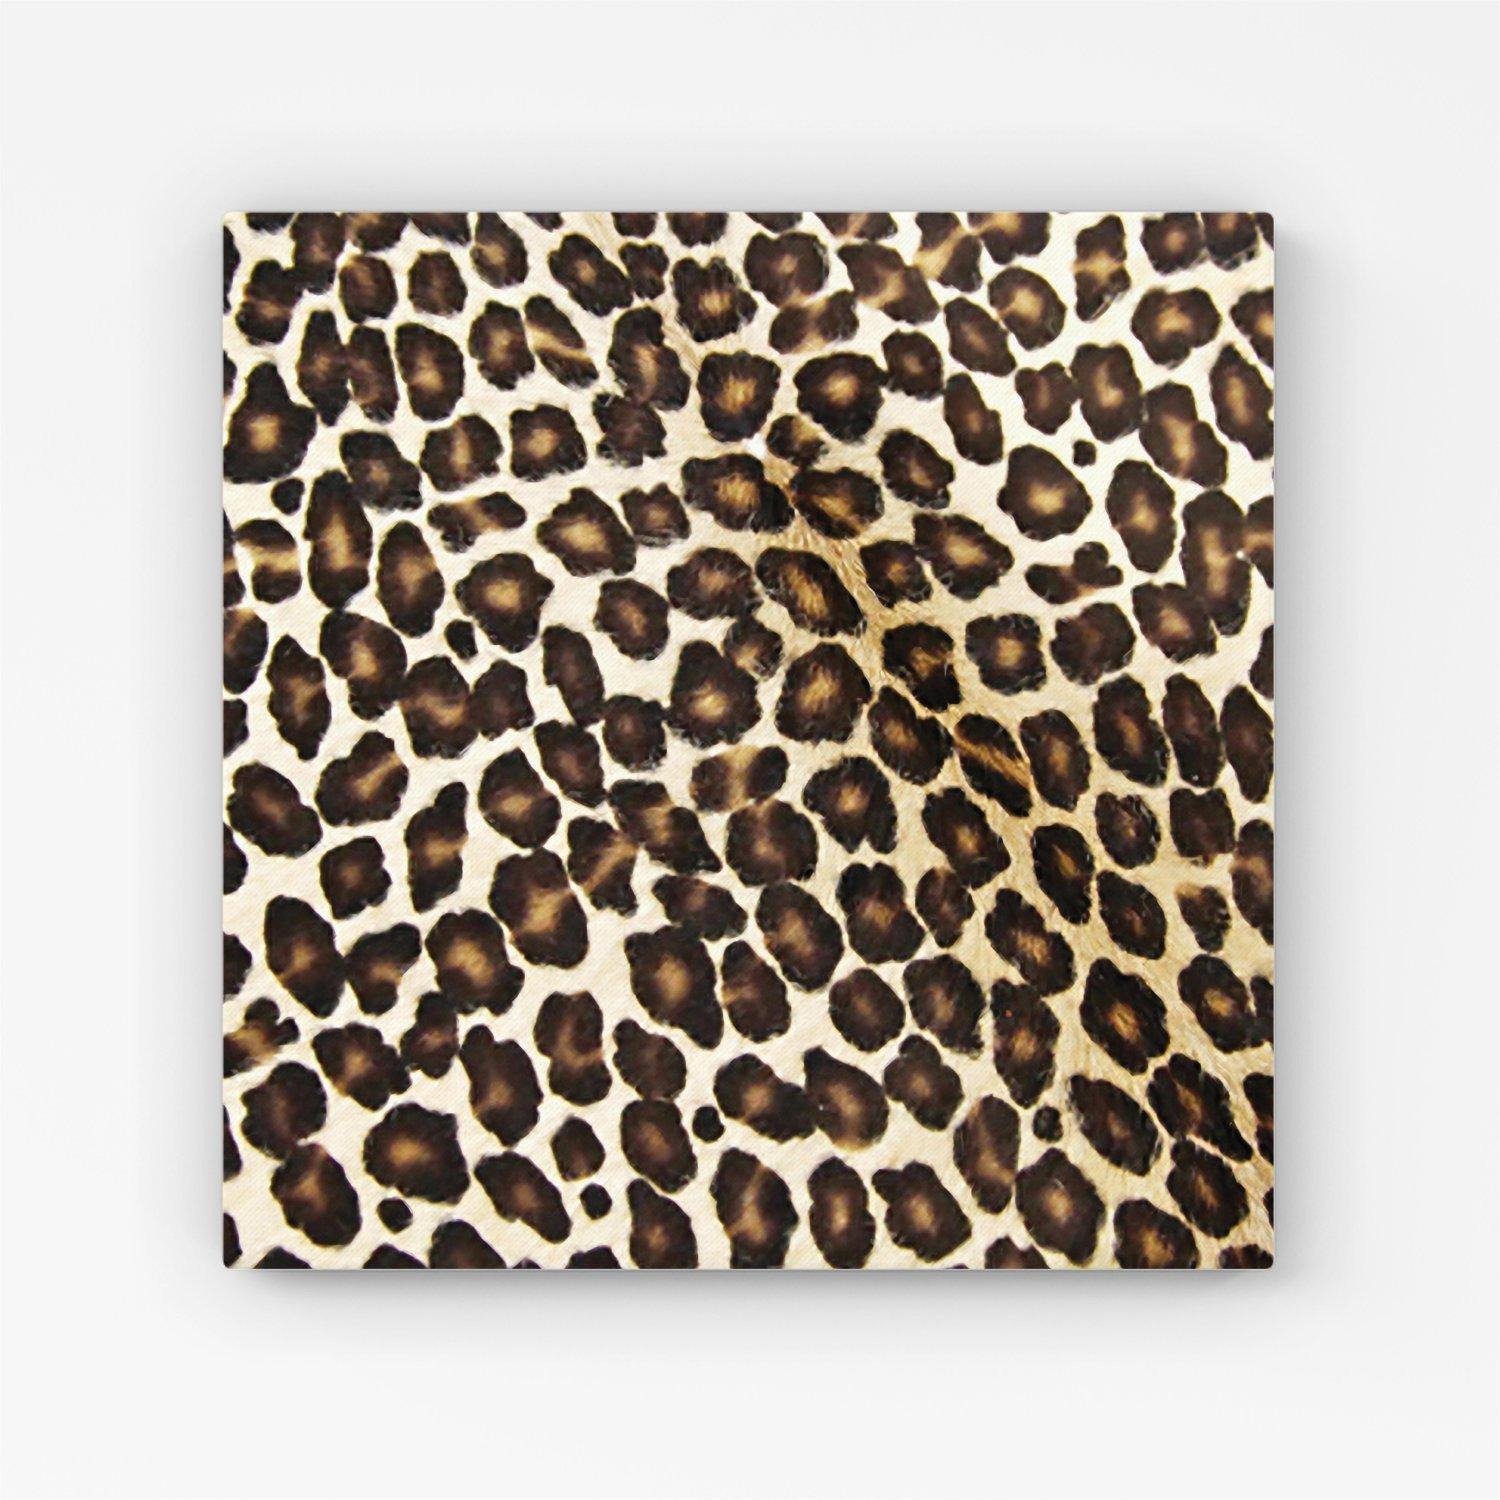 Leopard Hide Print Canvas - image 1